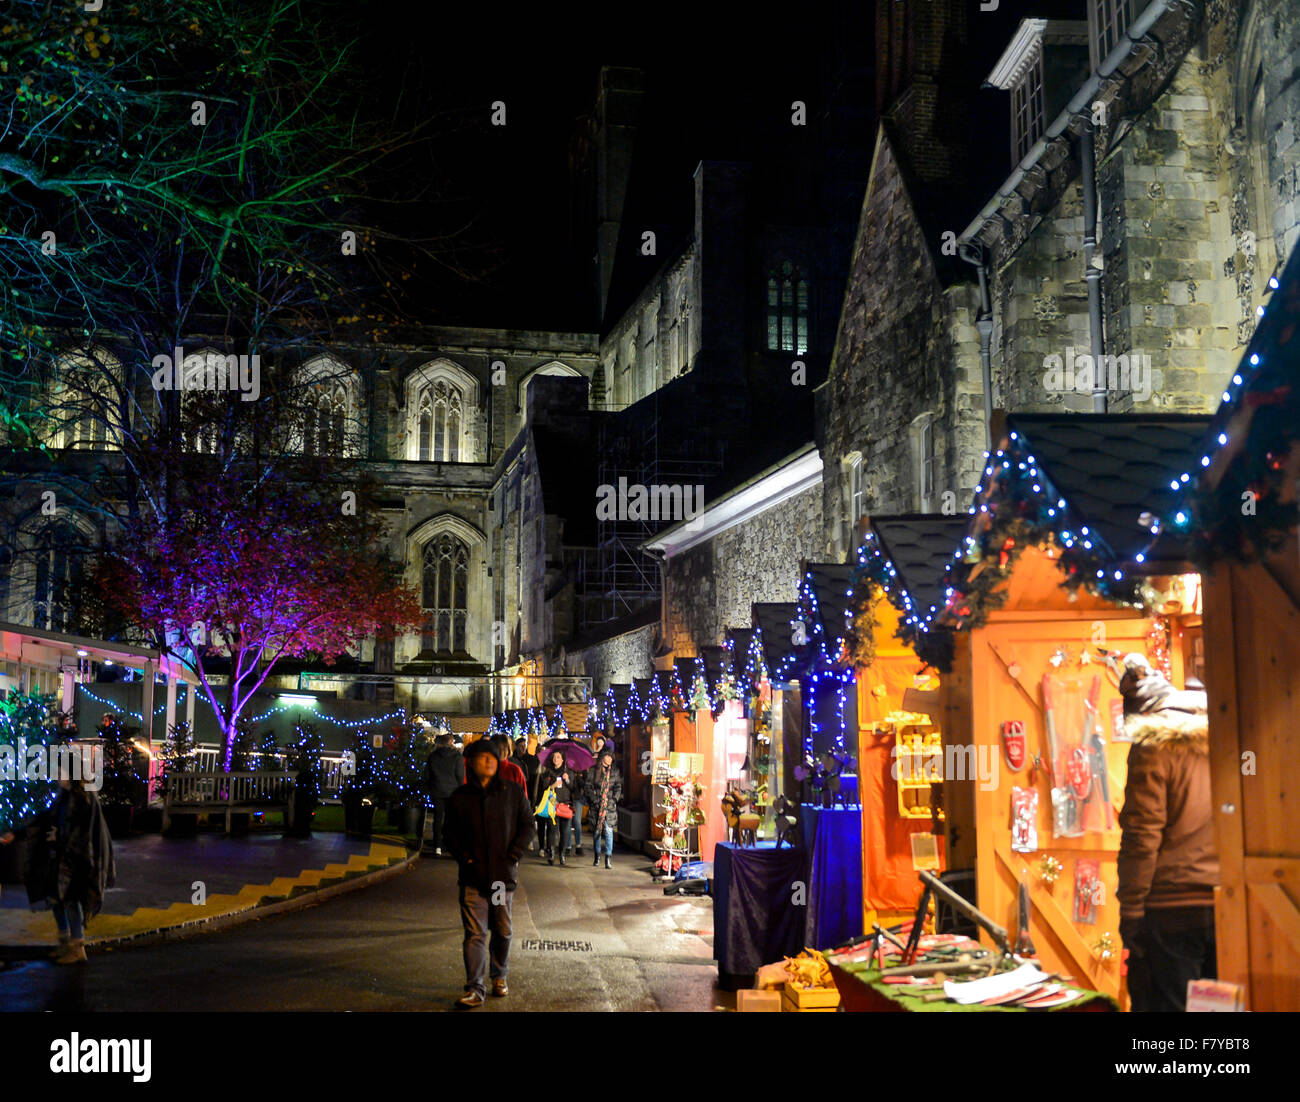 Weihnachtsmarkt Winchester, Hampshire, UK. Stände der jährliche Weihnachtsmarkt Leuchten auf dem Gelände der Winchester Cathedral: 2 Stockfoto